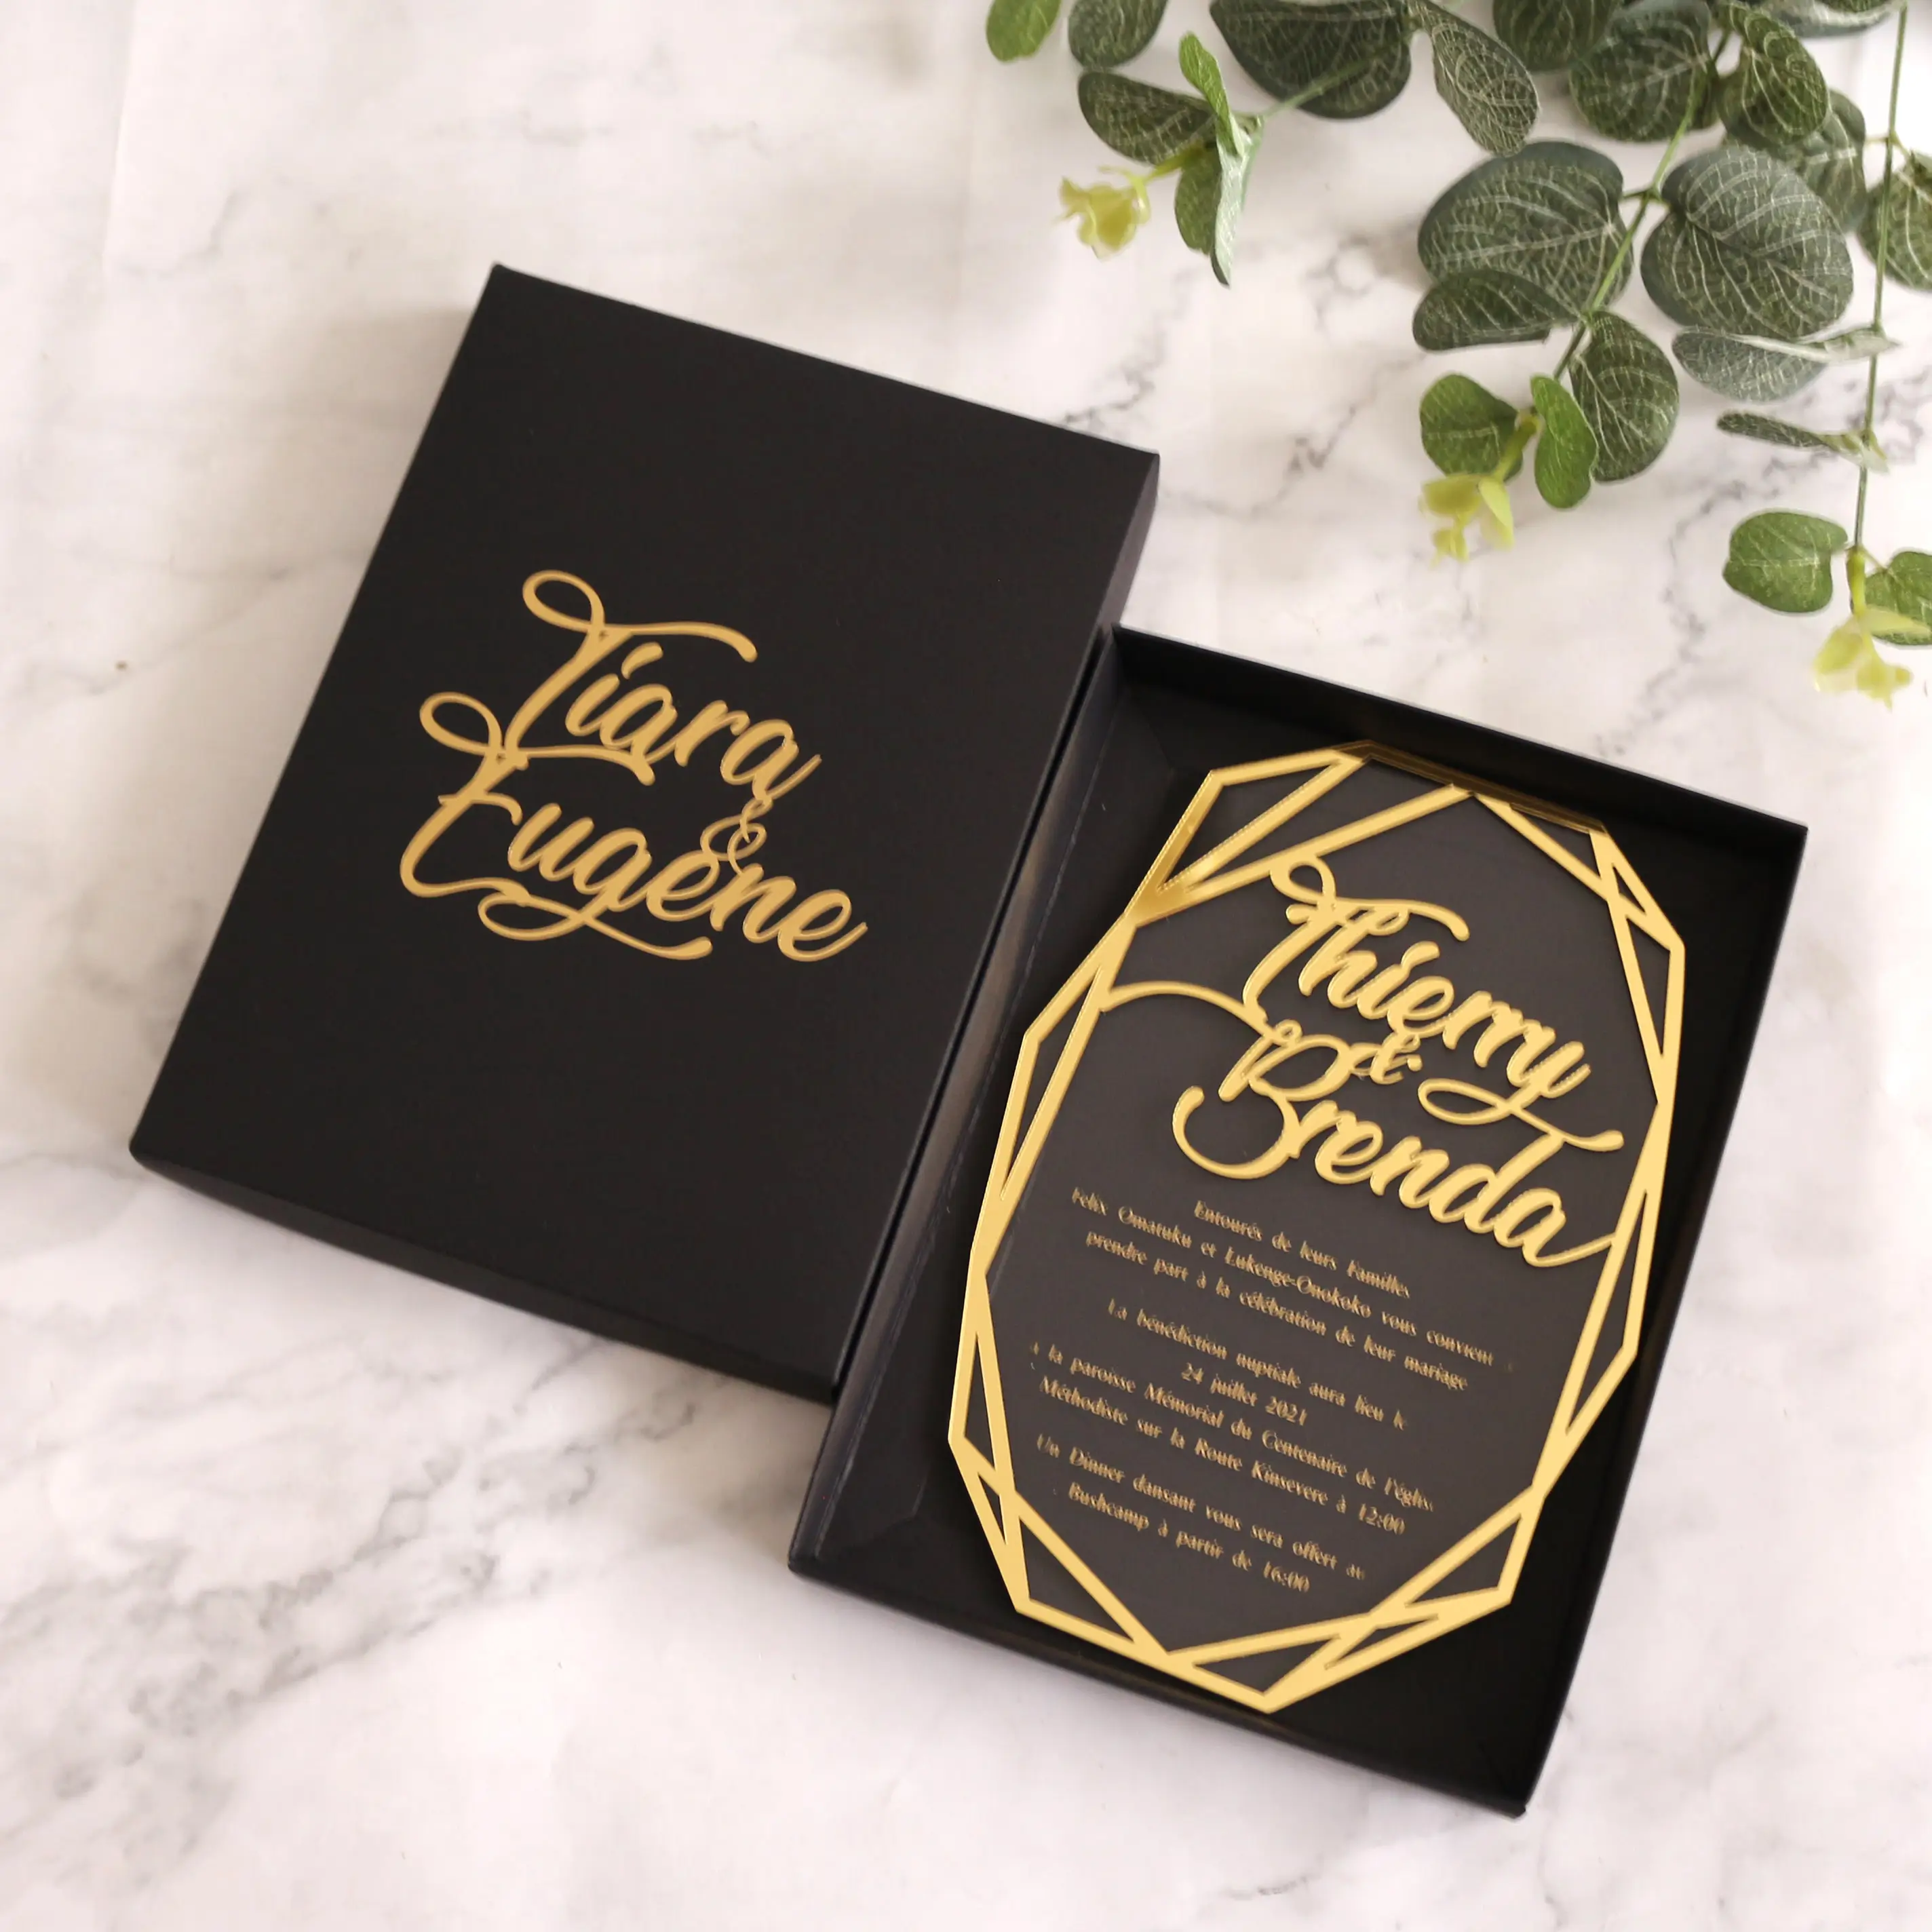 Tarjeta de invitación de boda acrílica de alta calidad, diseño creativo, texto dorado personalizado, decoración elegante